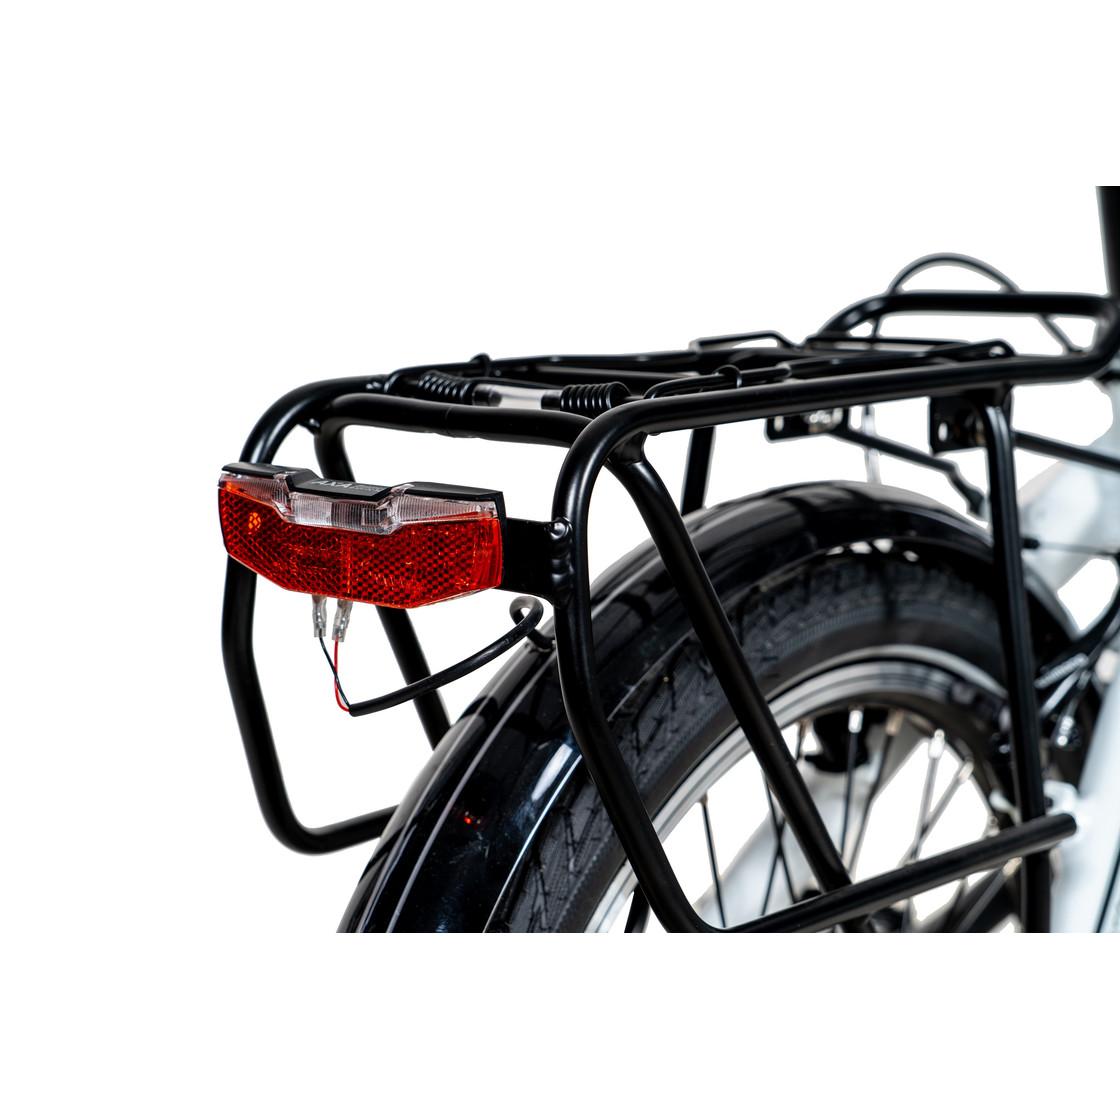 Selected image for XPLORER EF1 Sklopivi Električni bicikl EF1, 20", Beli